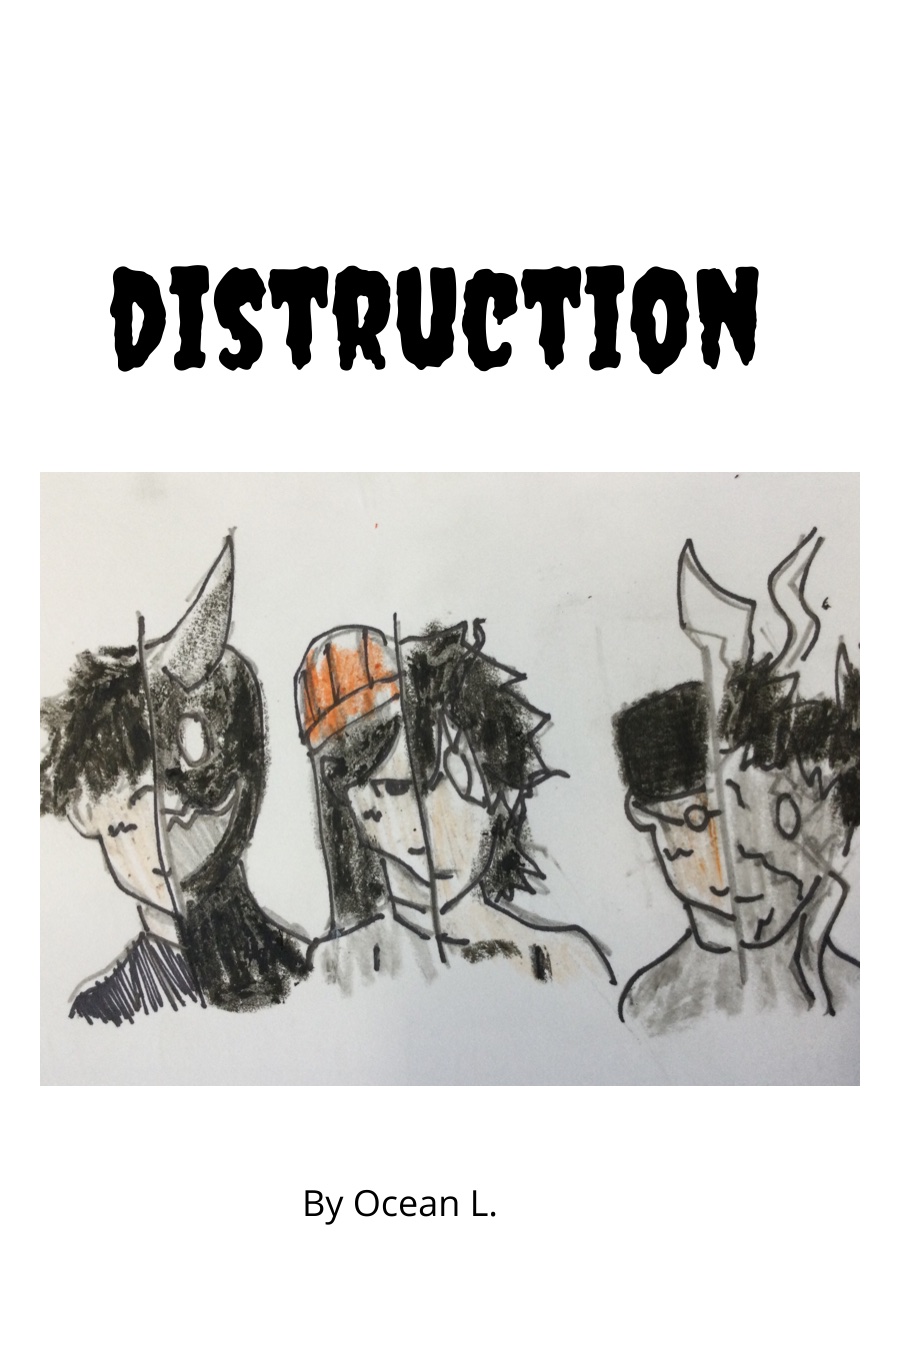 (copy) DISTRUCTION